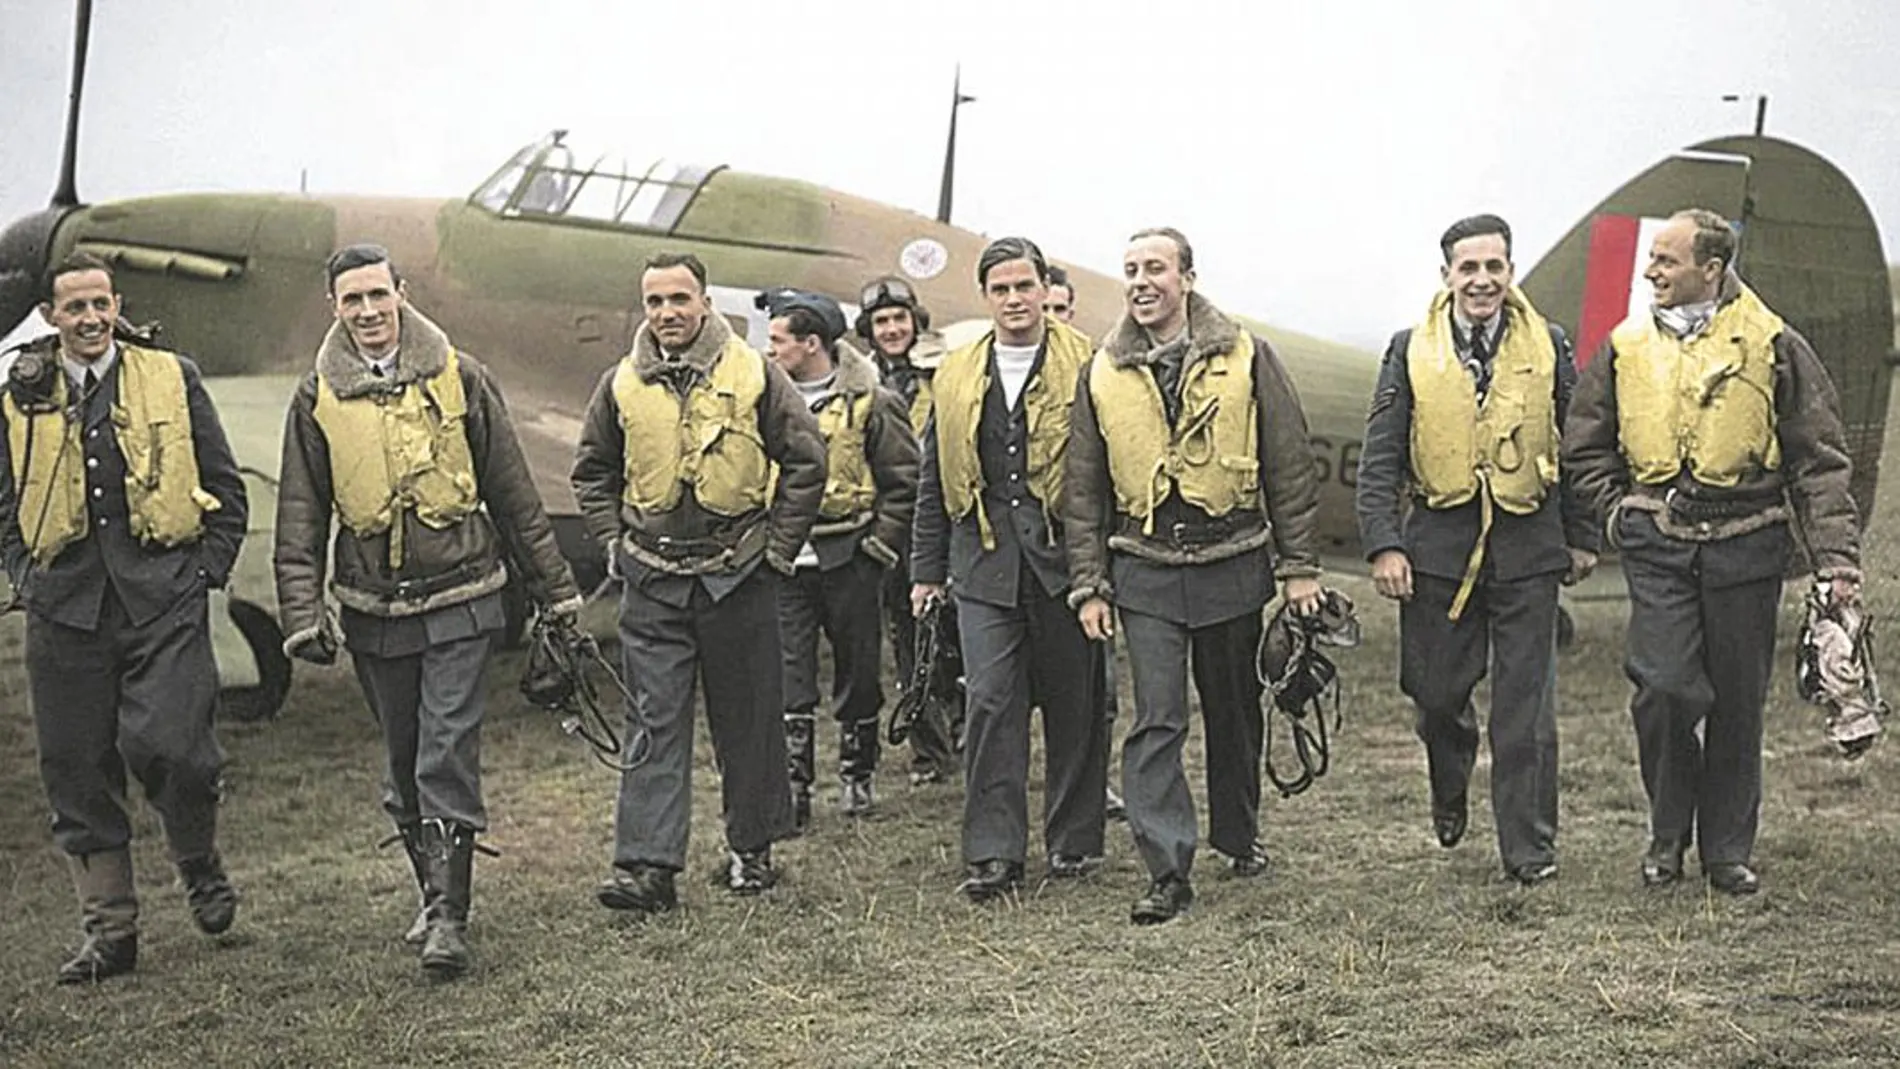 Imagen coloreada de algunos de los integrantes del 303 Escuadrón polaco (Polish Institute and Sikorski Museum London)